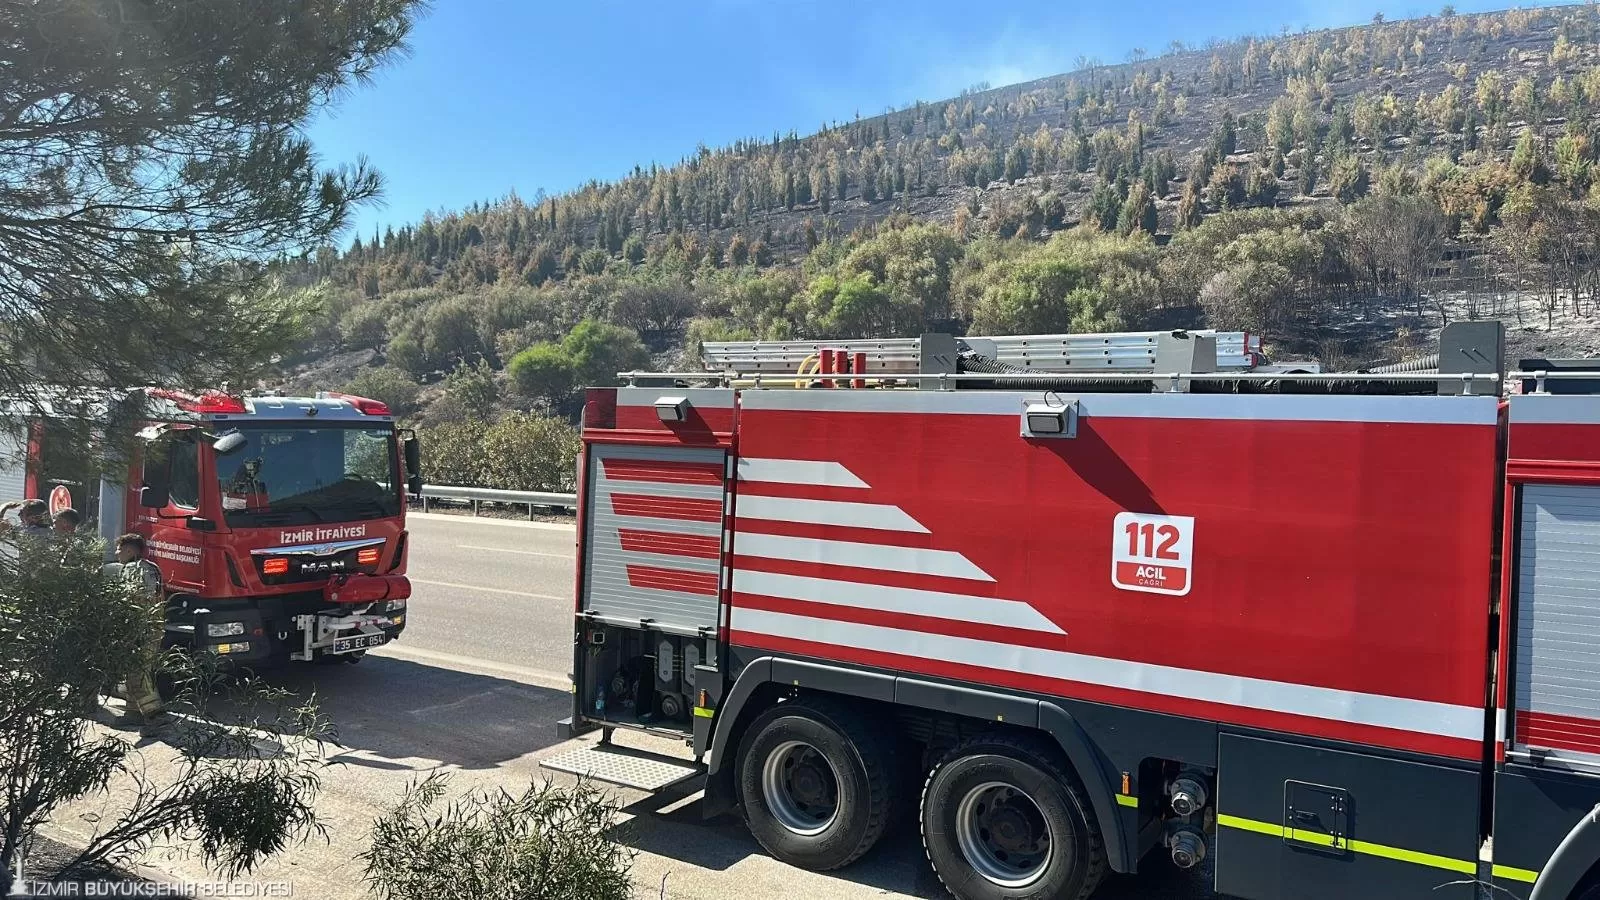 İzmir Büyükşehir Belediyesi, yaz aylarında artan orman yangınlarına karşı tetikte! Kurban Bayramı tatilinde 4 gün içinde 355 yangın çıktı, bunlardan 325'i anında söndürüldü.